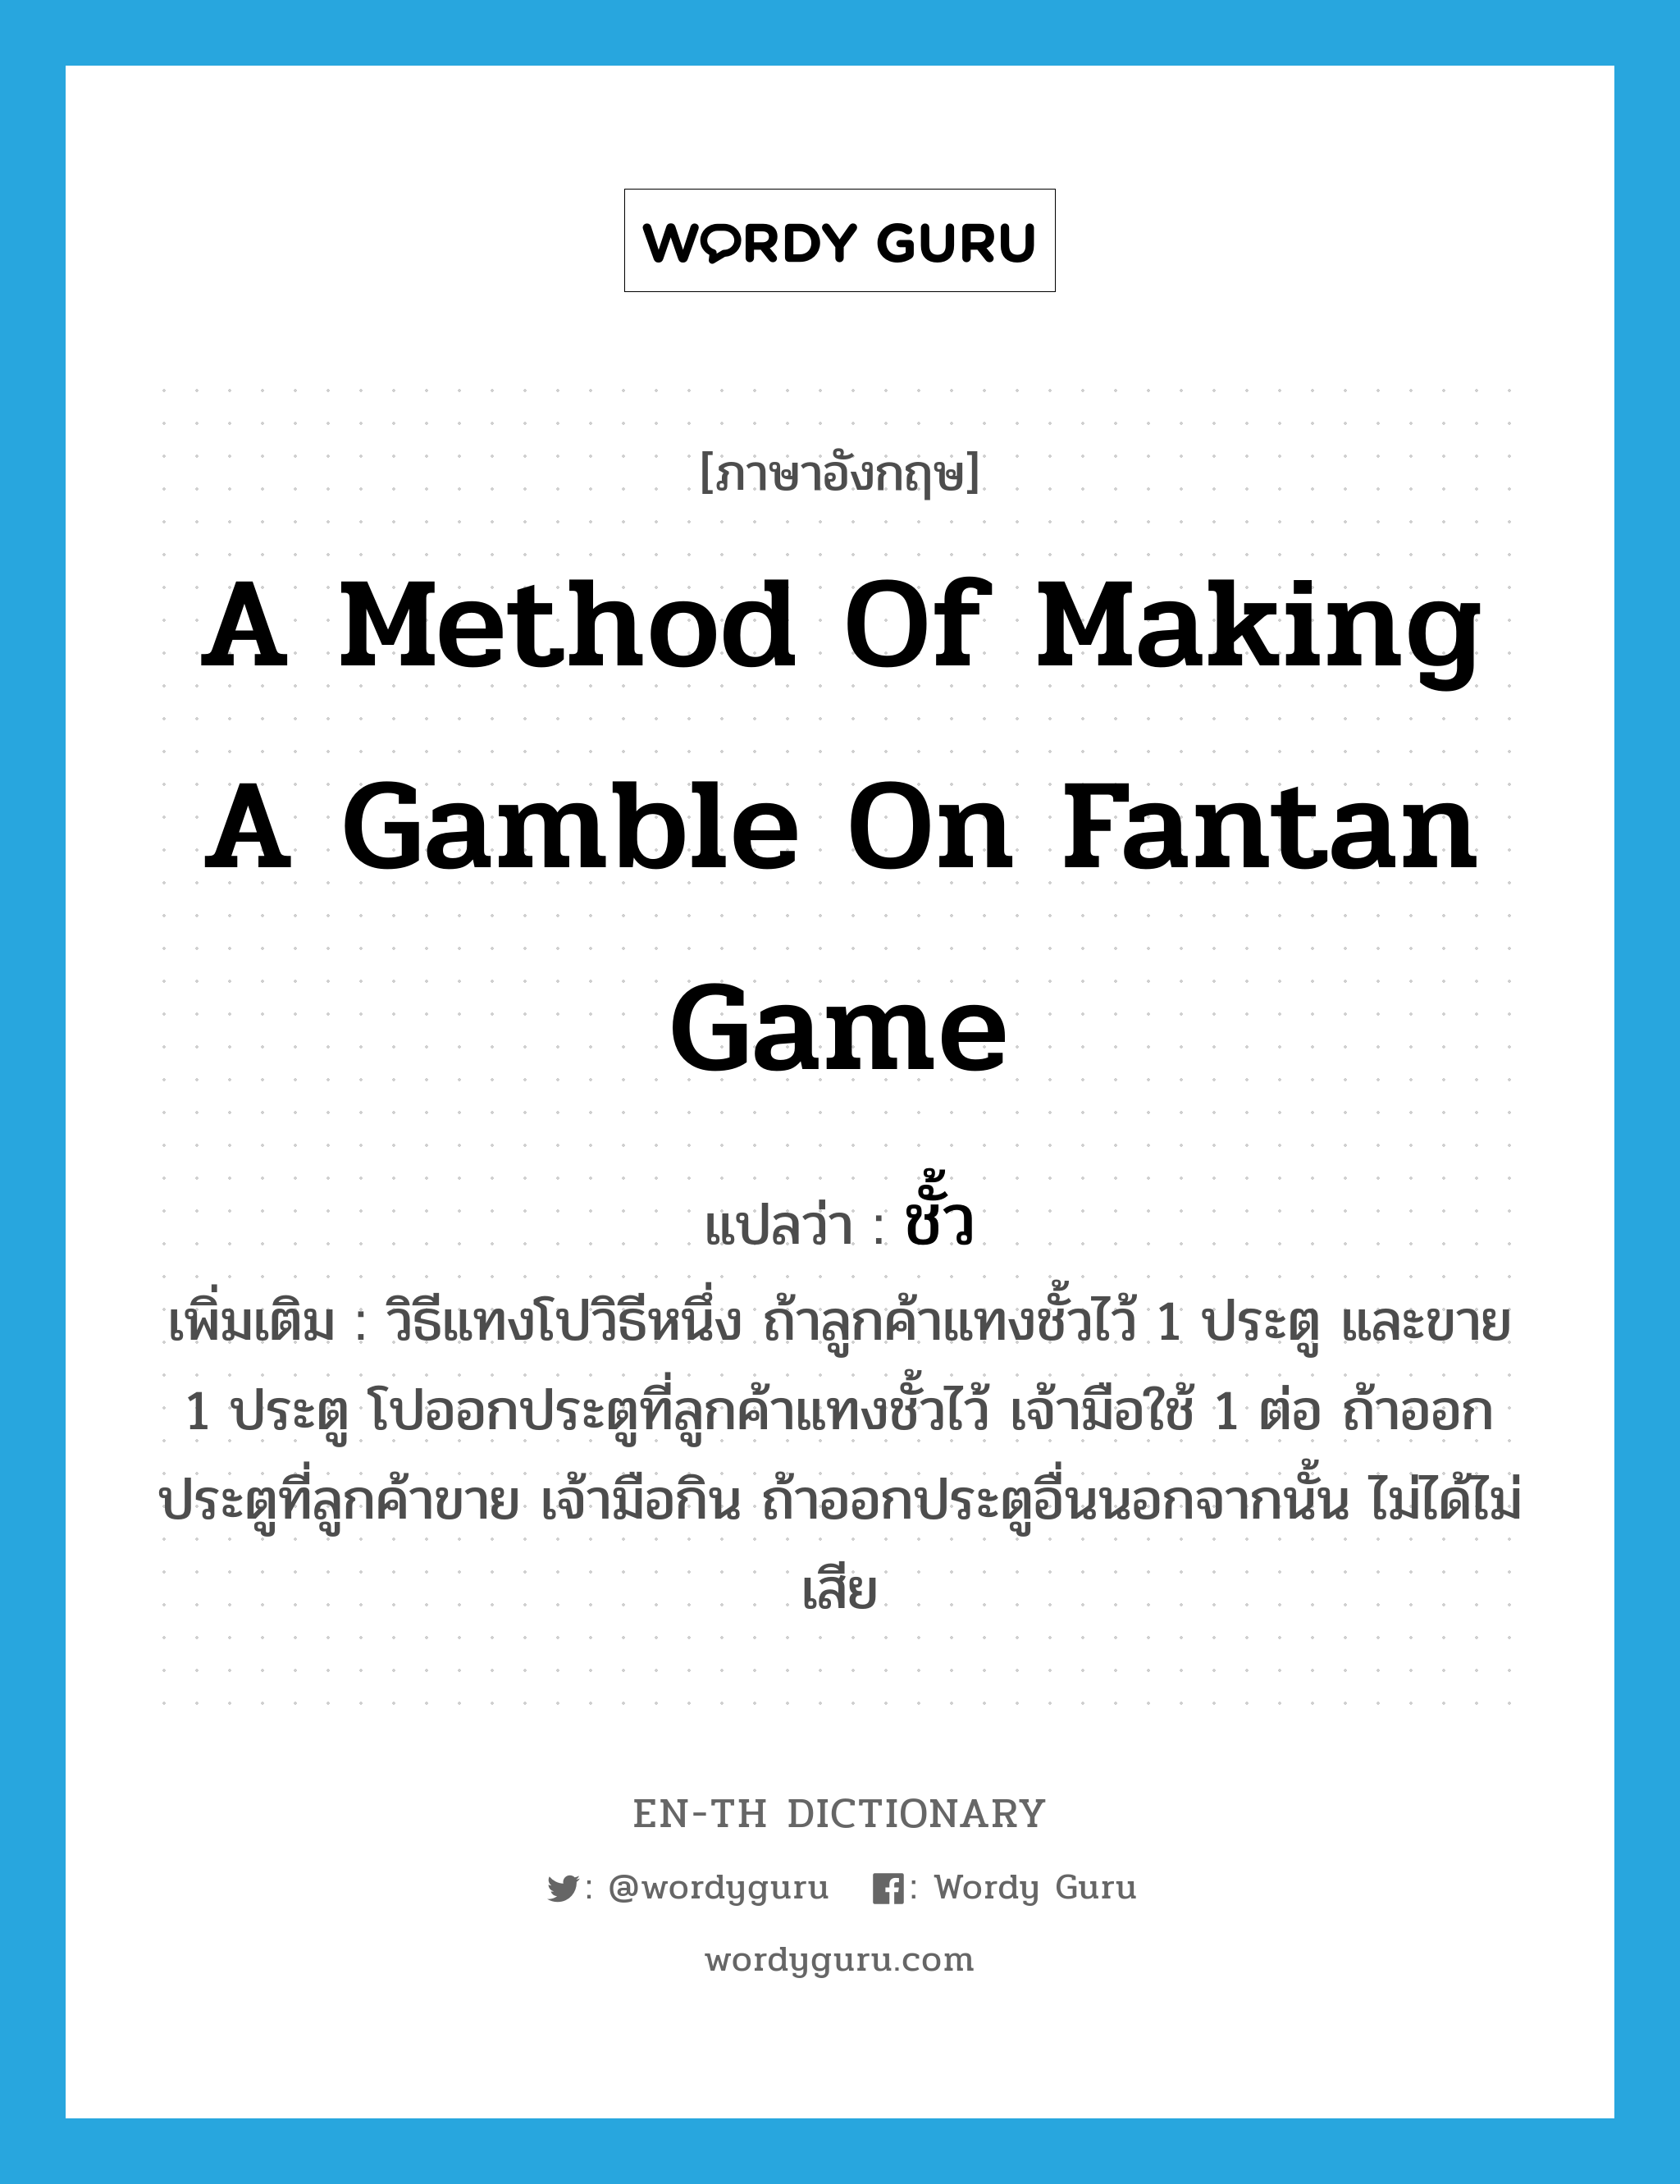 a method of making a gamble on fantan game แปลว่า?, คำศัพท์ภาษาอังกฤษ a method of making a gamble on fantan game แปลว่า ชั้ว ประเภท N เพิ่มเติม วิธีแทงโปวิธีหนึ่ง ถ้าลูกค้าแทงชั้วไว้ 1 ประตู และขาย 1 ประตู โปออกประตูที่ลูกค้าแทงชั้วไว้ เจ้ามือใช้ 1 ต่อ ถ้าออกประตูที่ลูกค้าขาย เจ้ามือกิน ถ้าออกประตูอื่นนอกจากนั้น ไม่ได้ไม่เสีย หมวด N